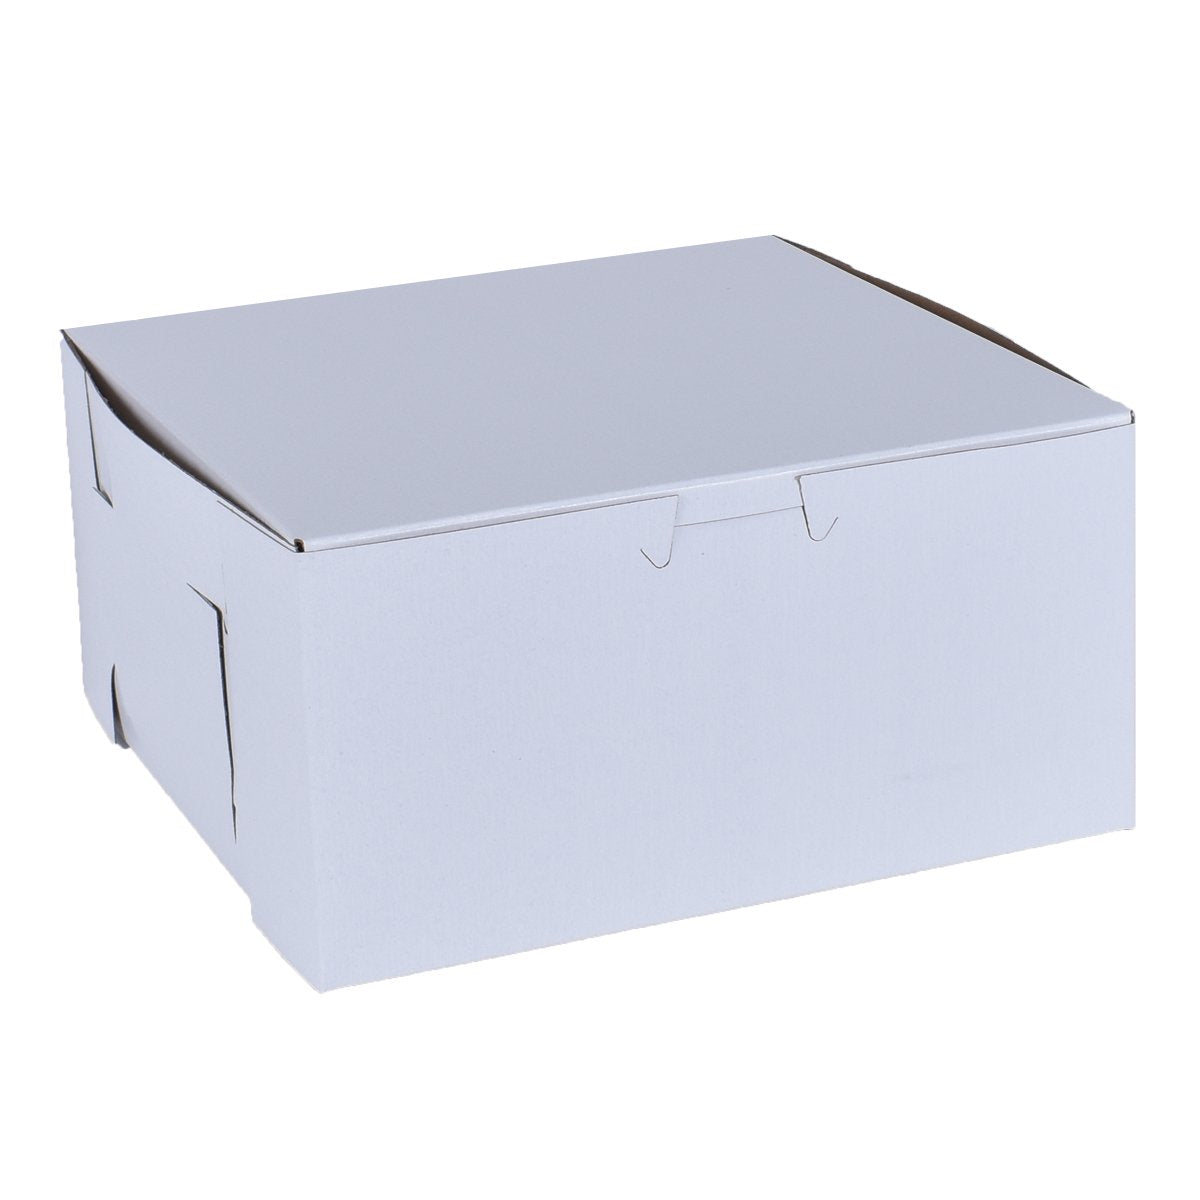 White Cake Boxes 8x8x5 – Bake Supply Plus